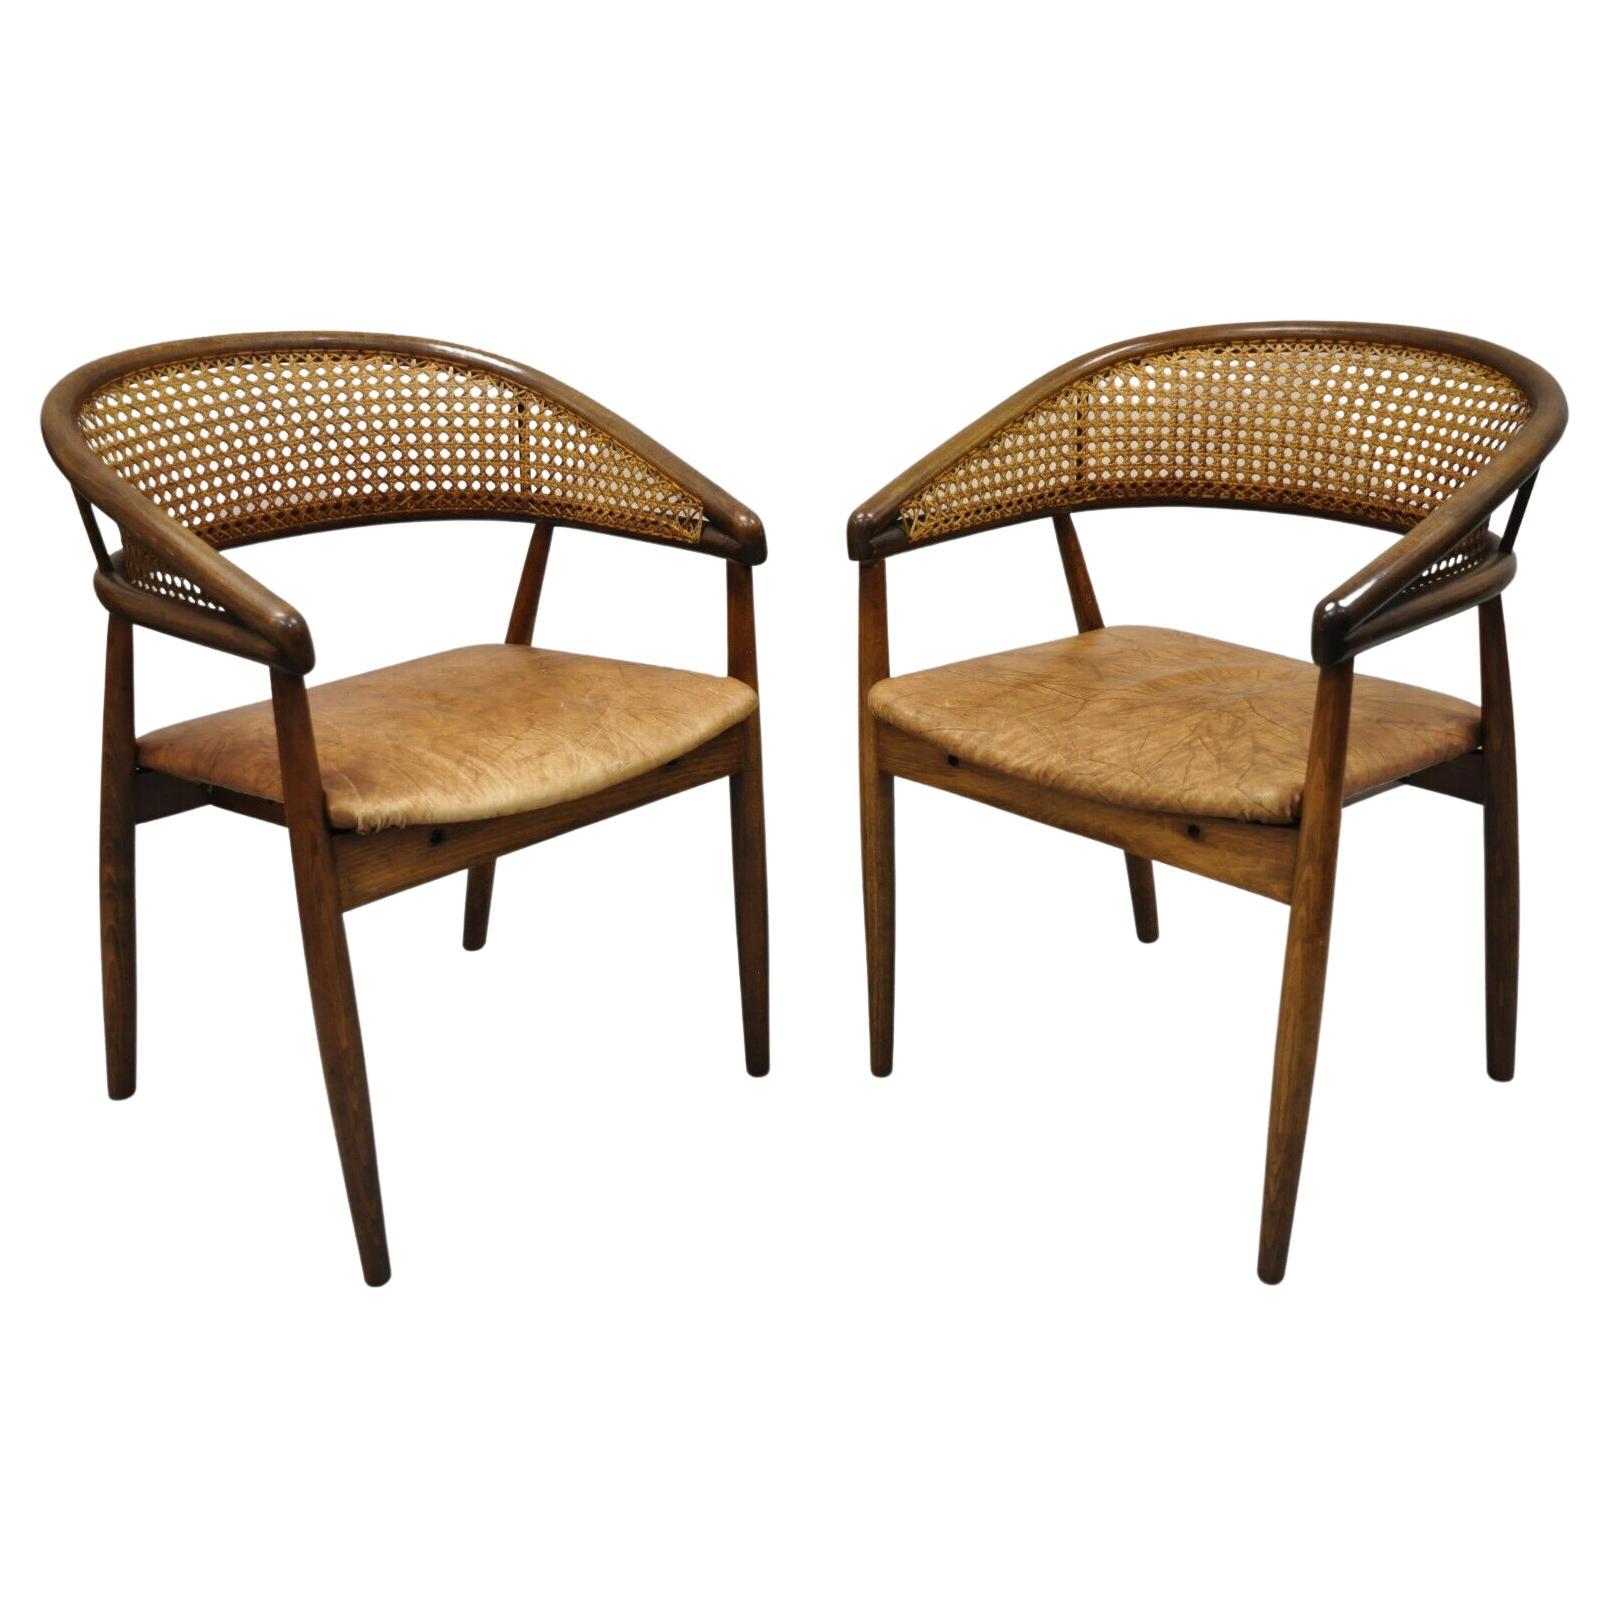 Paire de fauteuils en bois courbé de style King Cole de James Mont, datant du milieu du siècle dernier